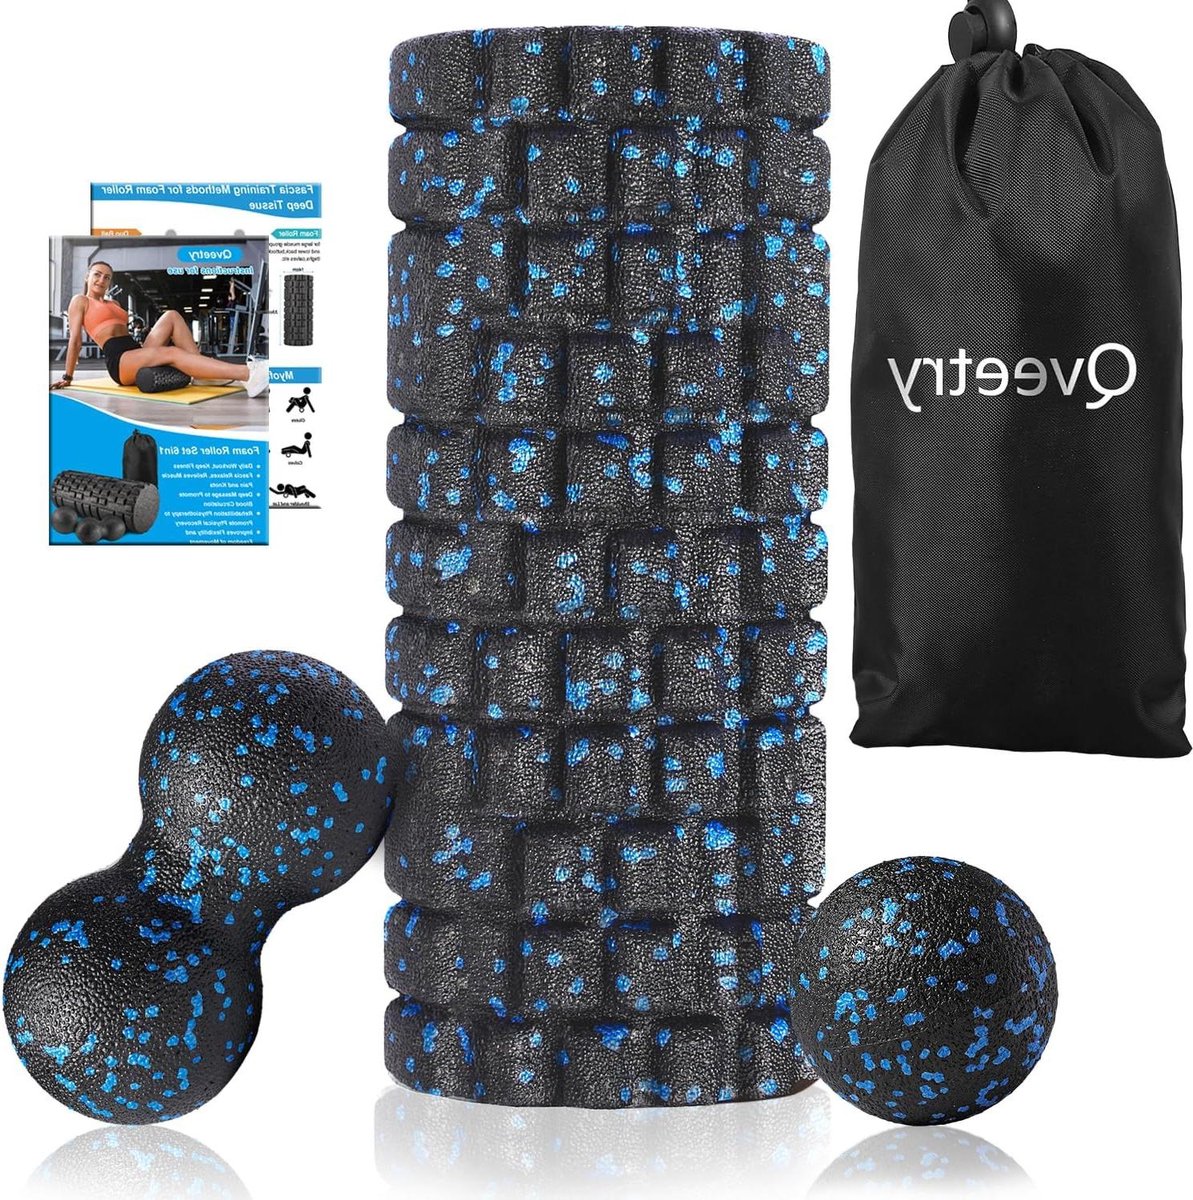 4-in-1 fascia rollenset met fasciabal en duobal - fascia training van spieren - foamroller voor dieptespiermassage - pilates yoga sport (zwart-blauw) stretching foam roller